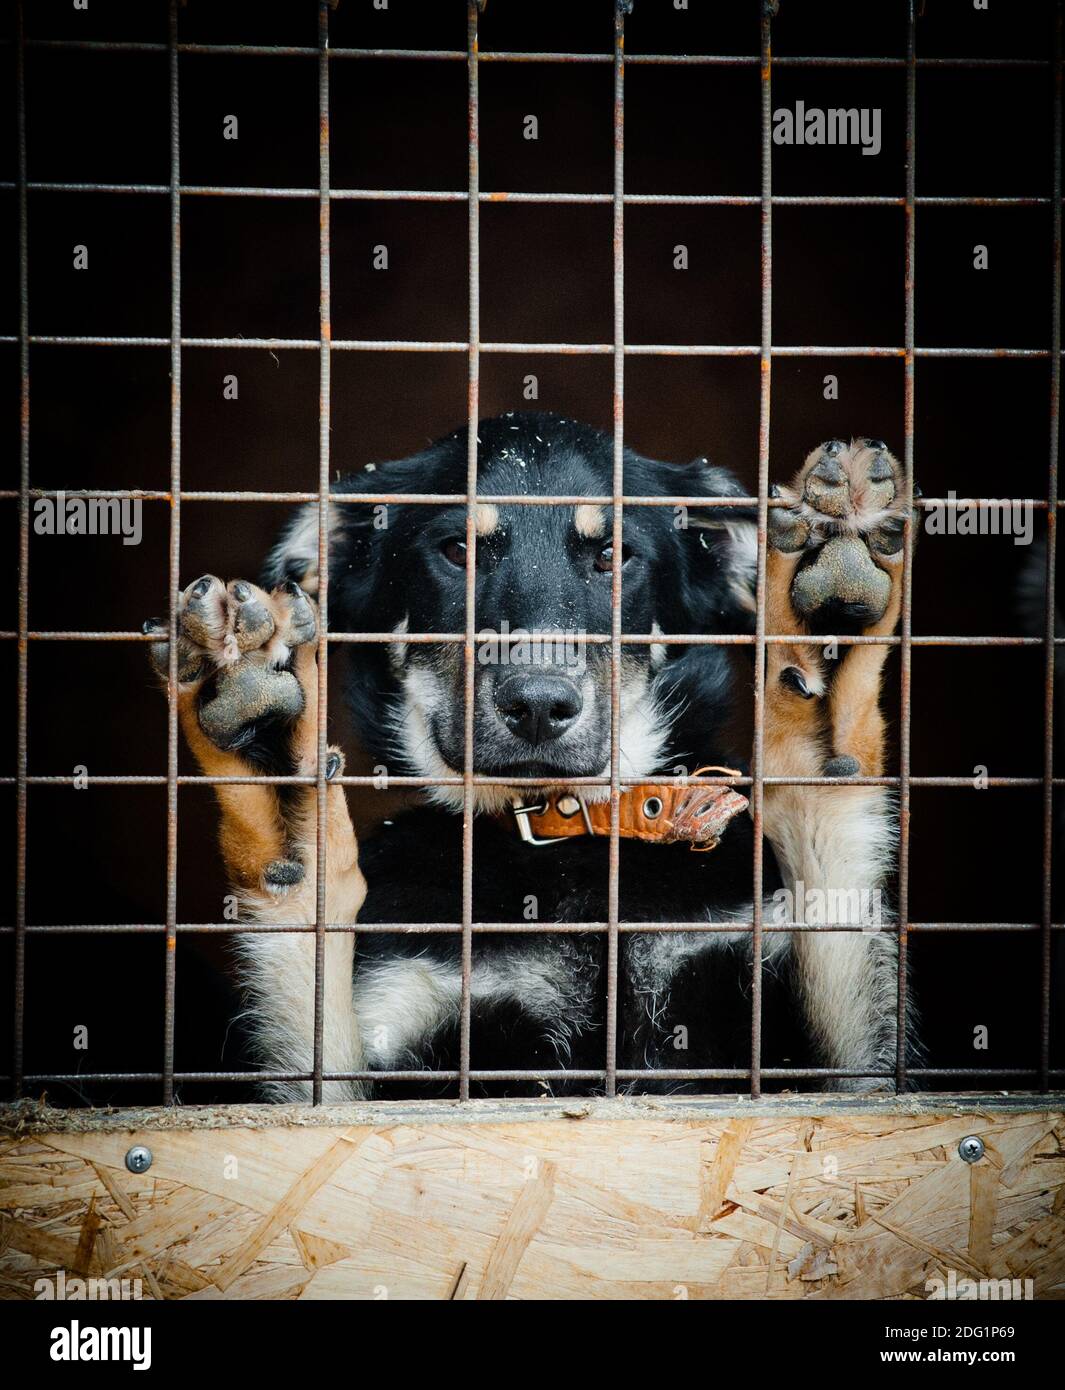 Concetto: Cane senza casa in rifugio cane dietro la recinzione in attesa di nuova casa Foto Stock